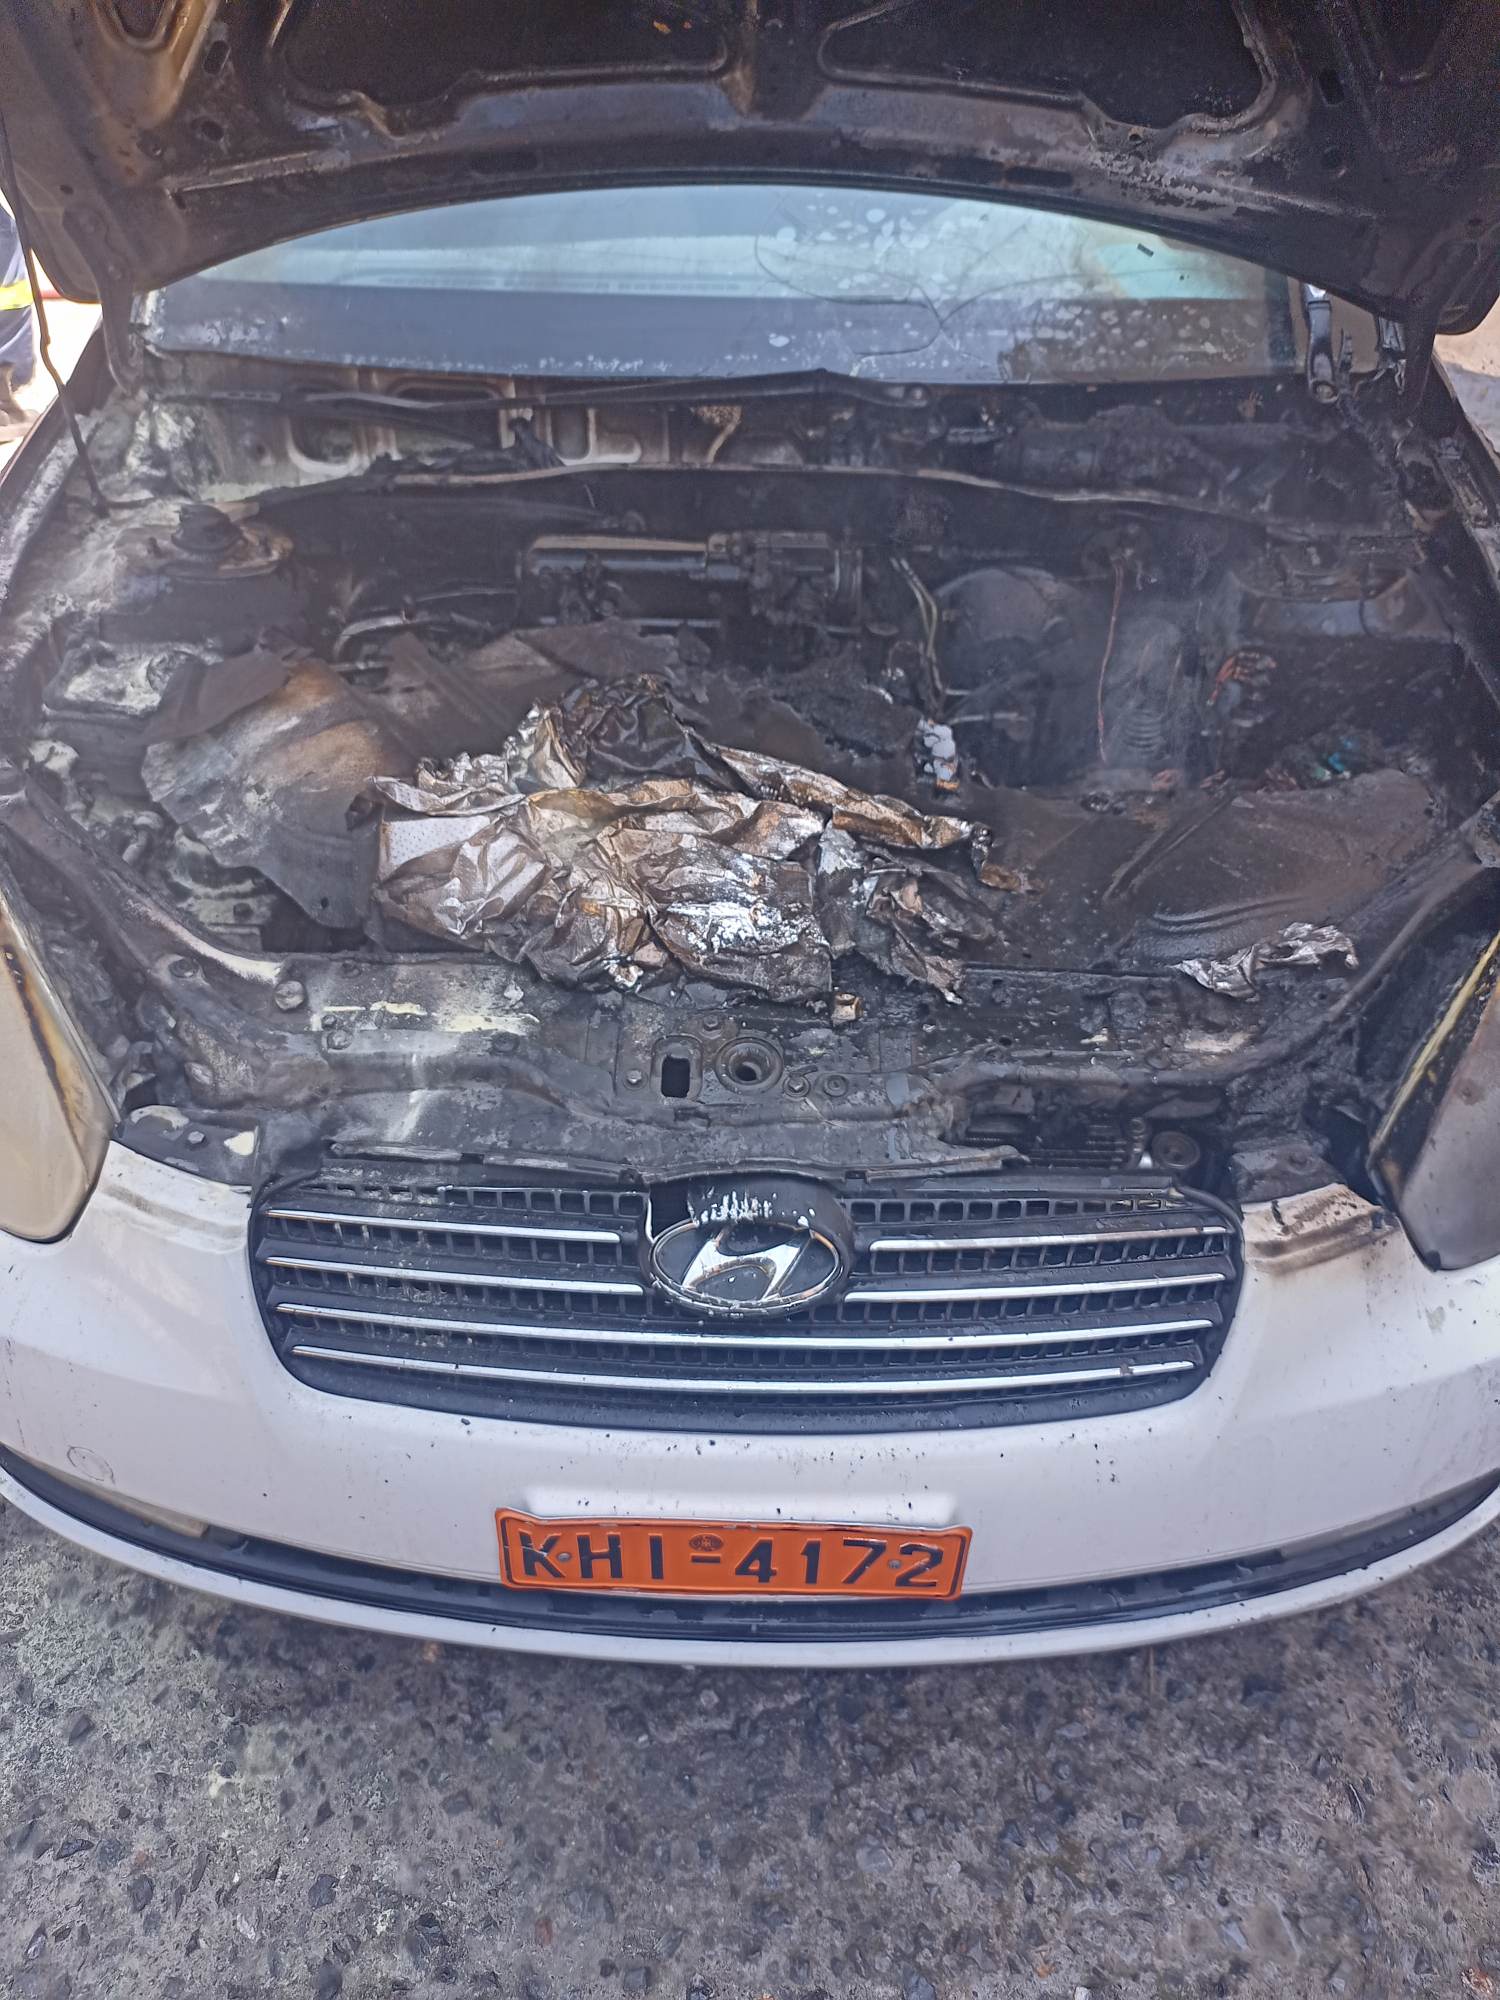 Καλαμάτα: Φωτιά πήρε αυτοκίνητο της Δημοτικής Αστυνομίας